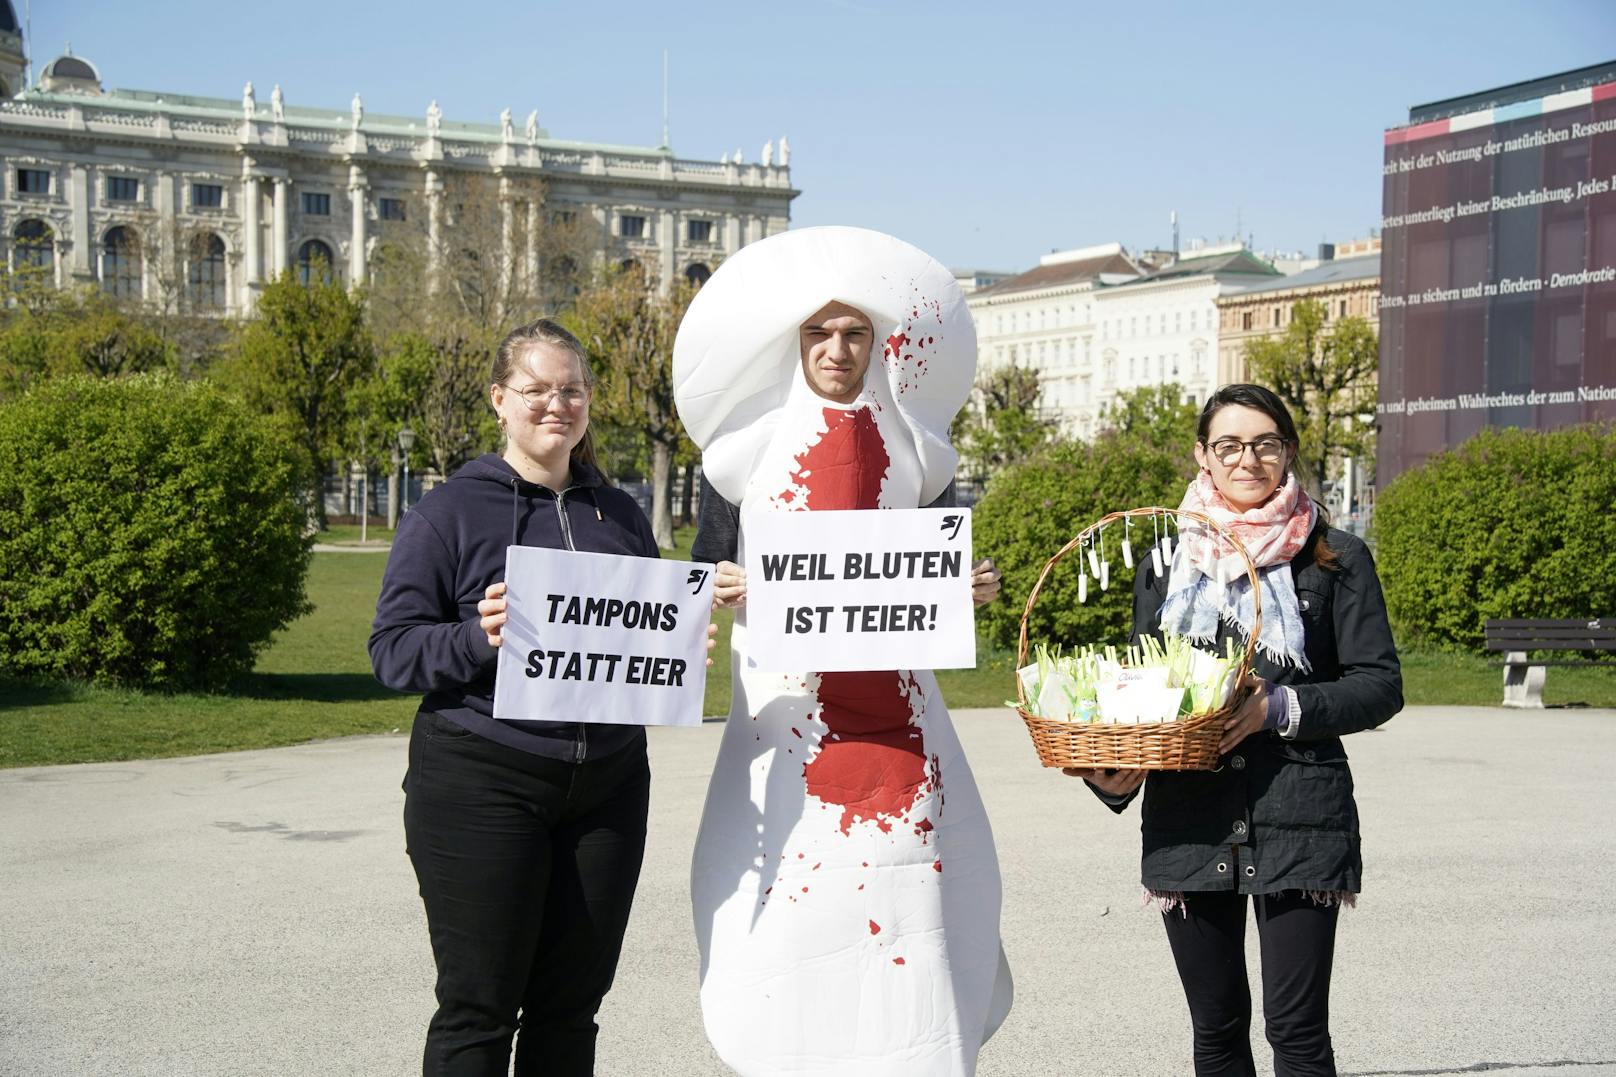 "Tampons statt Eier – weil Bluten ist teier" – mit diesem Slogan fordert die SJ kostenlose Menstruationsprodukte für Frauen.